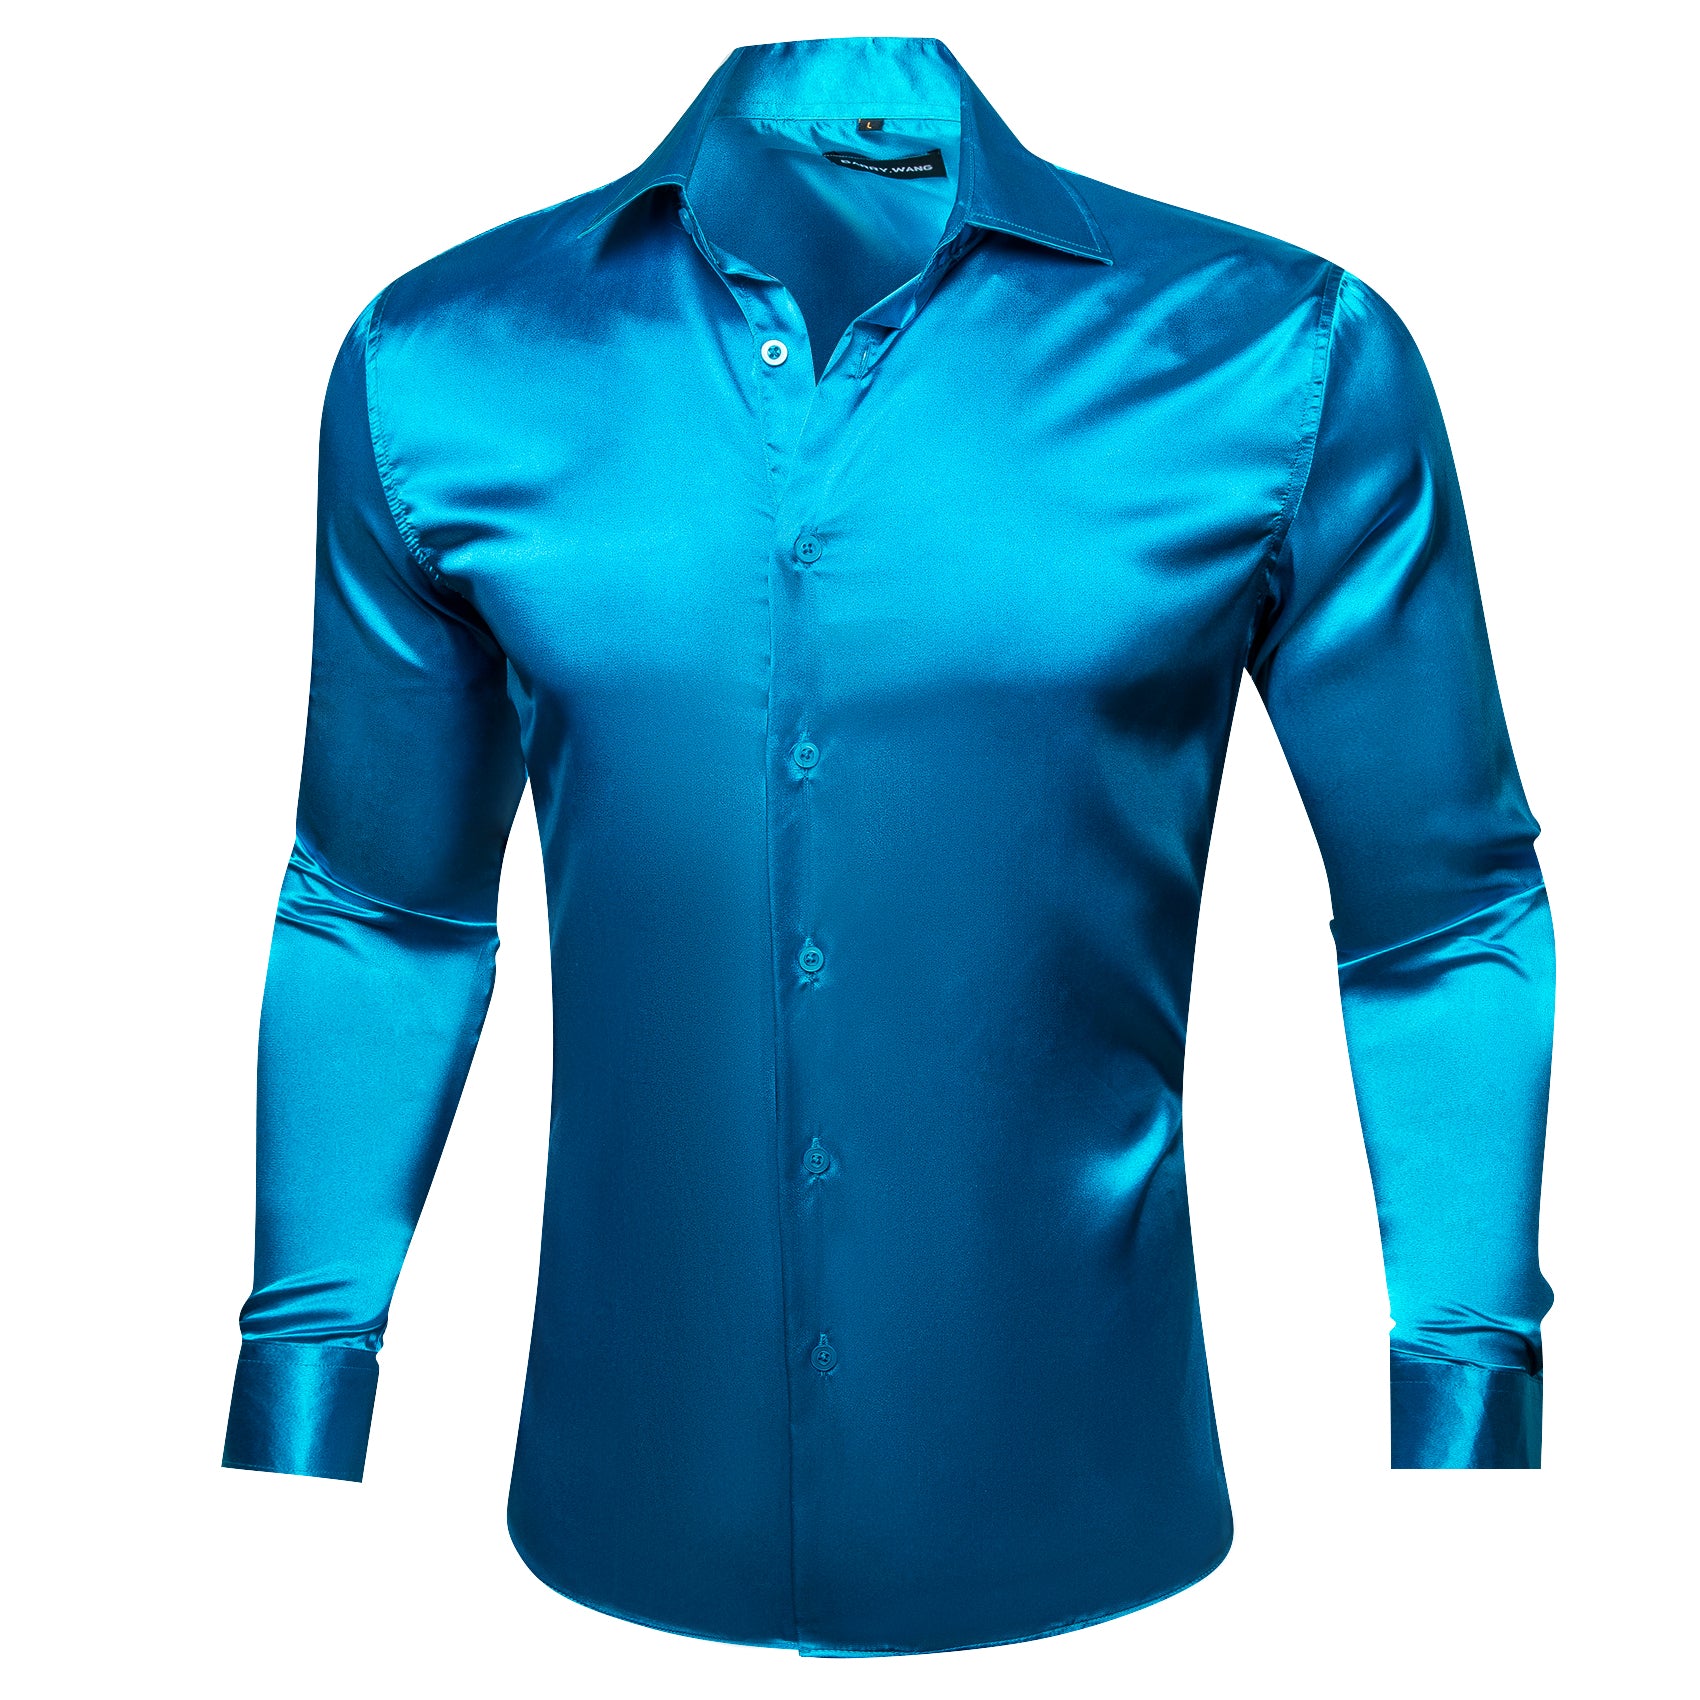 Barry.wang Button Down Shirt Steel Blue Satin Solid Silk Men's Shirt